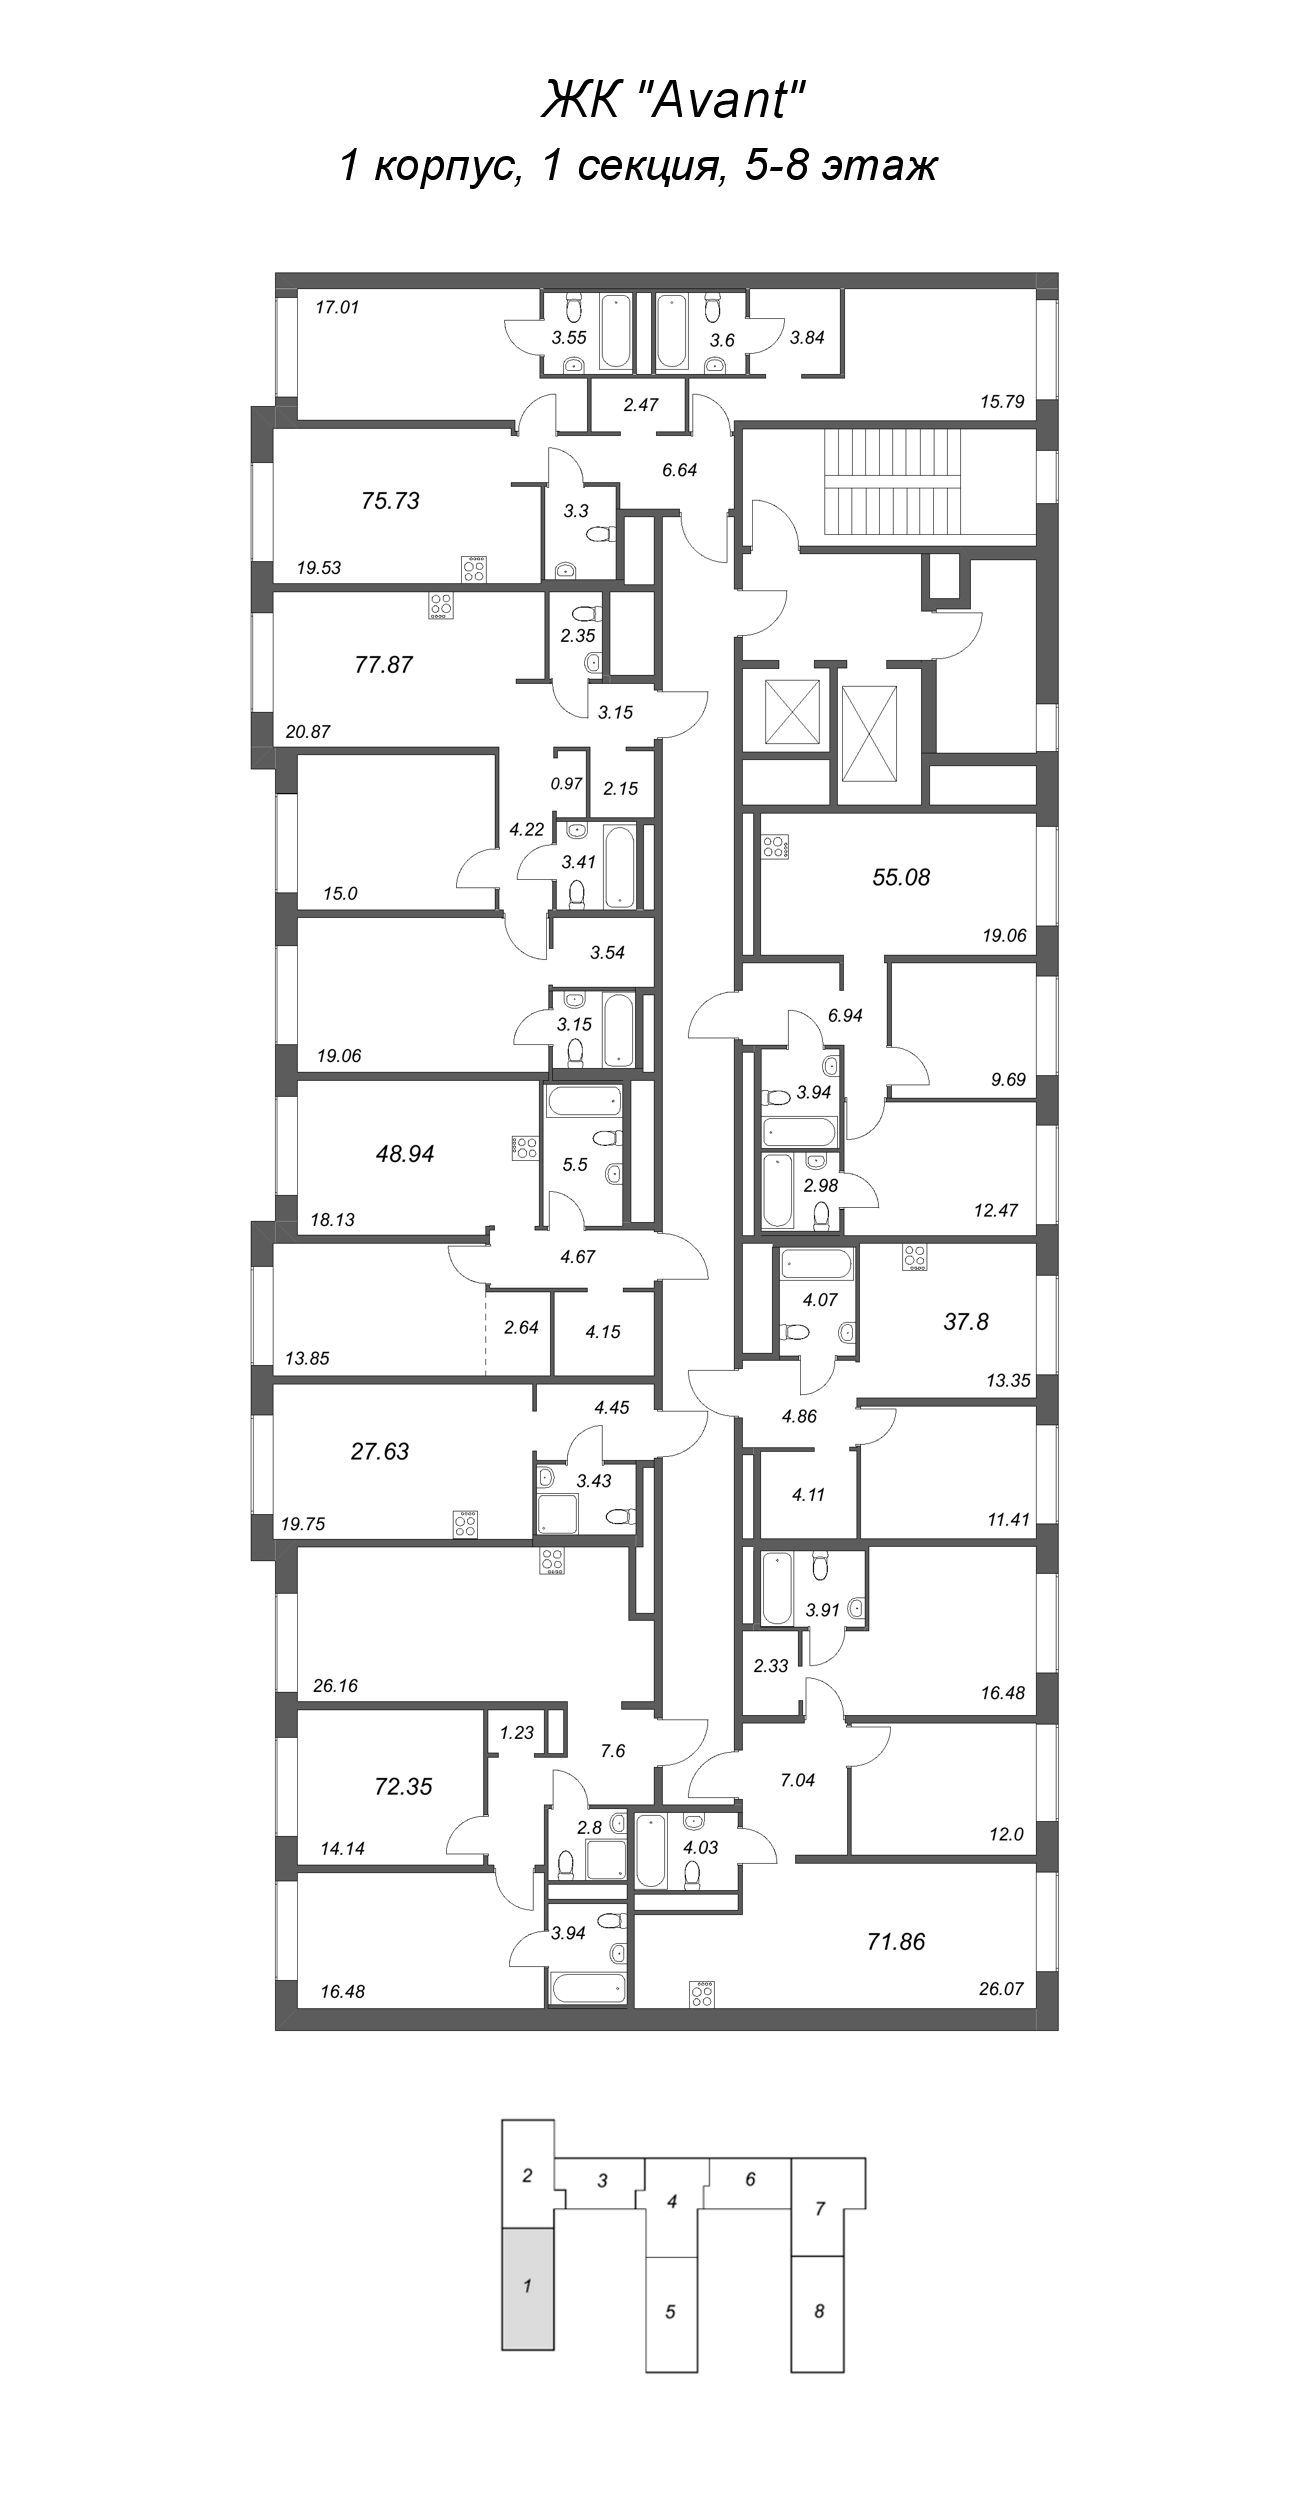 1-комнатная квартира, 37.8 м² в ЖК "Avant" - планировка этажа